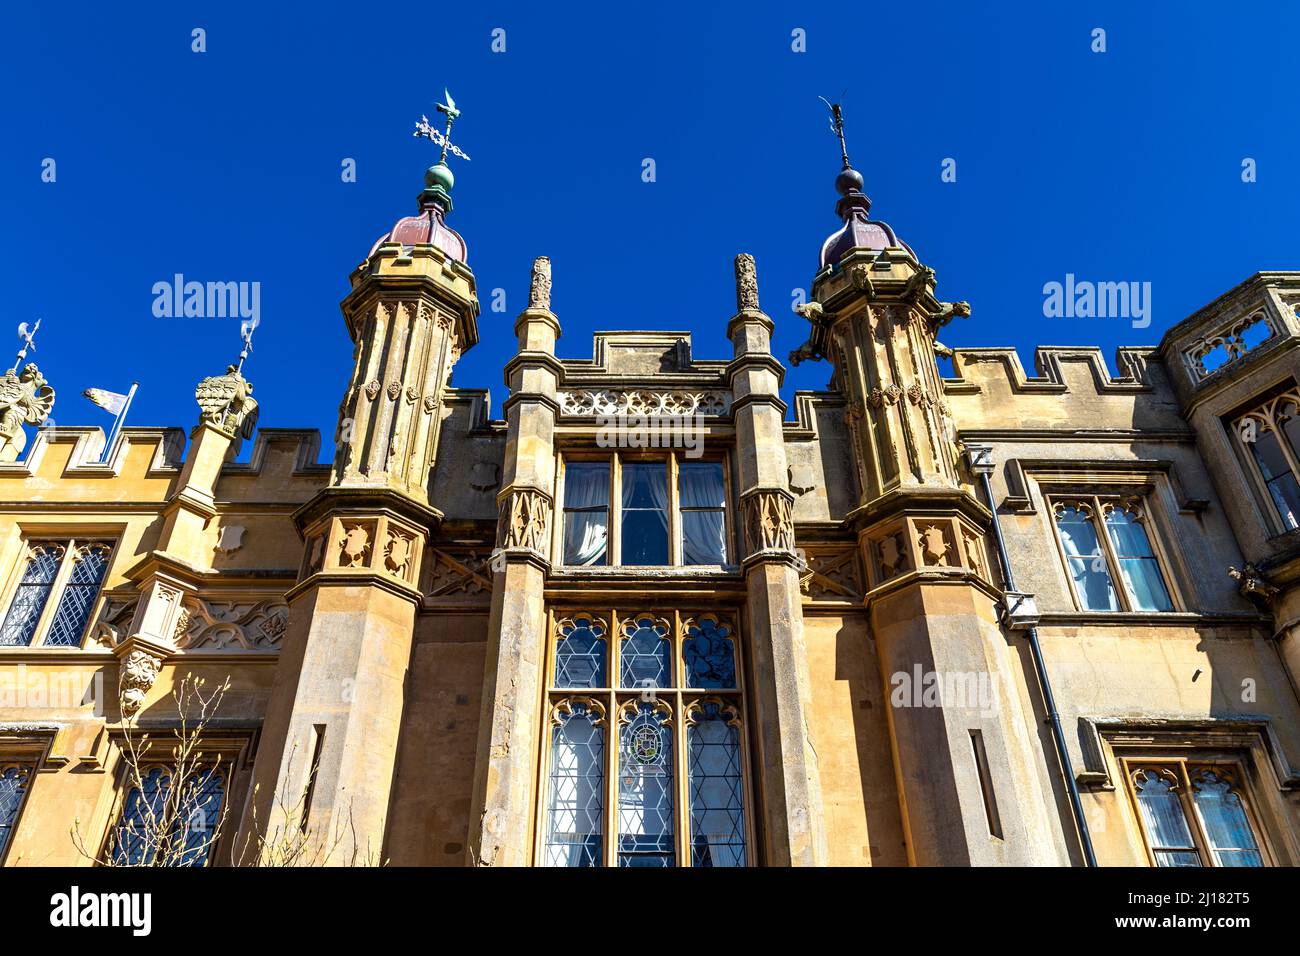 Detail of the ornate Tudor Gothic style facade of Knebworth House, Hertfordshire, UK Stock Photo